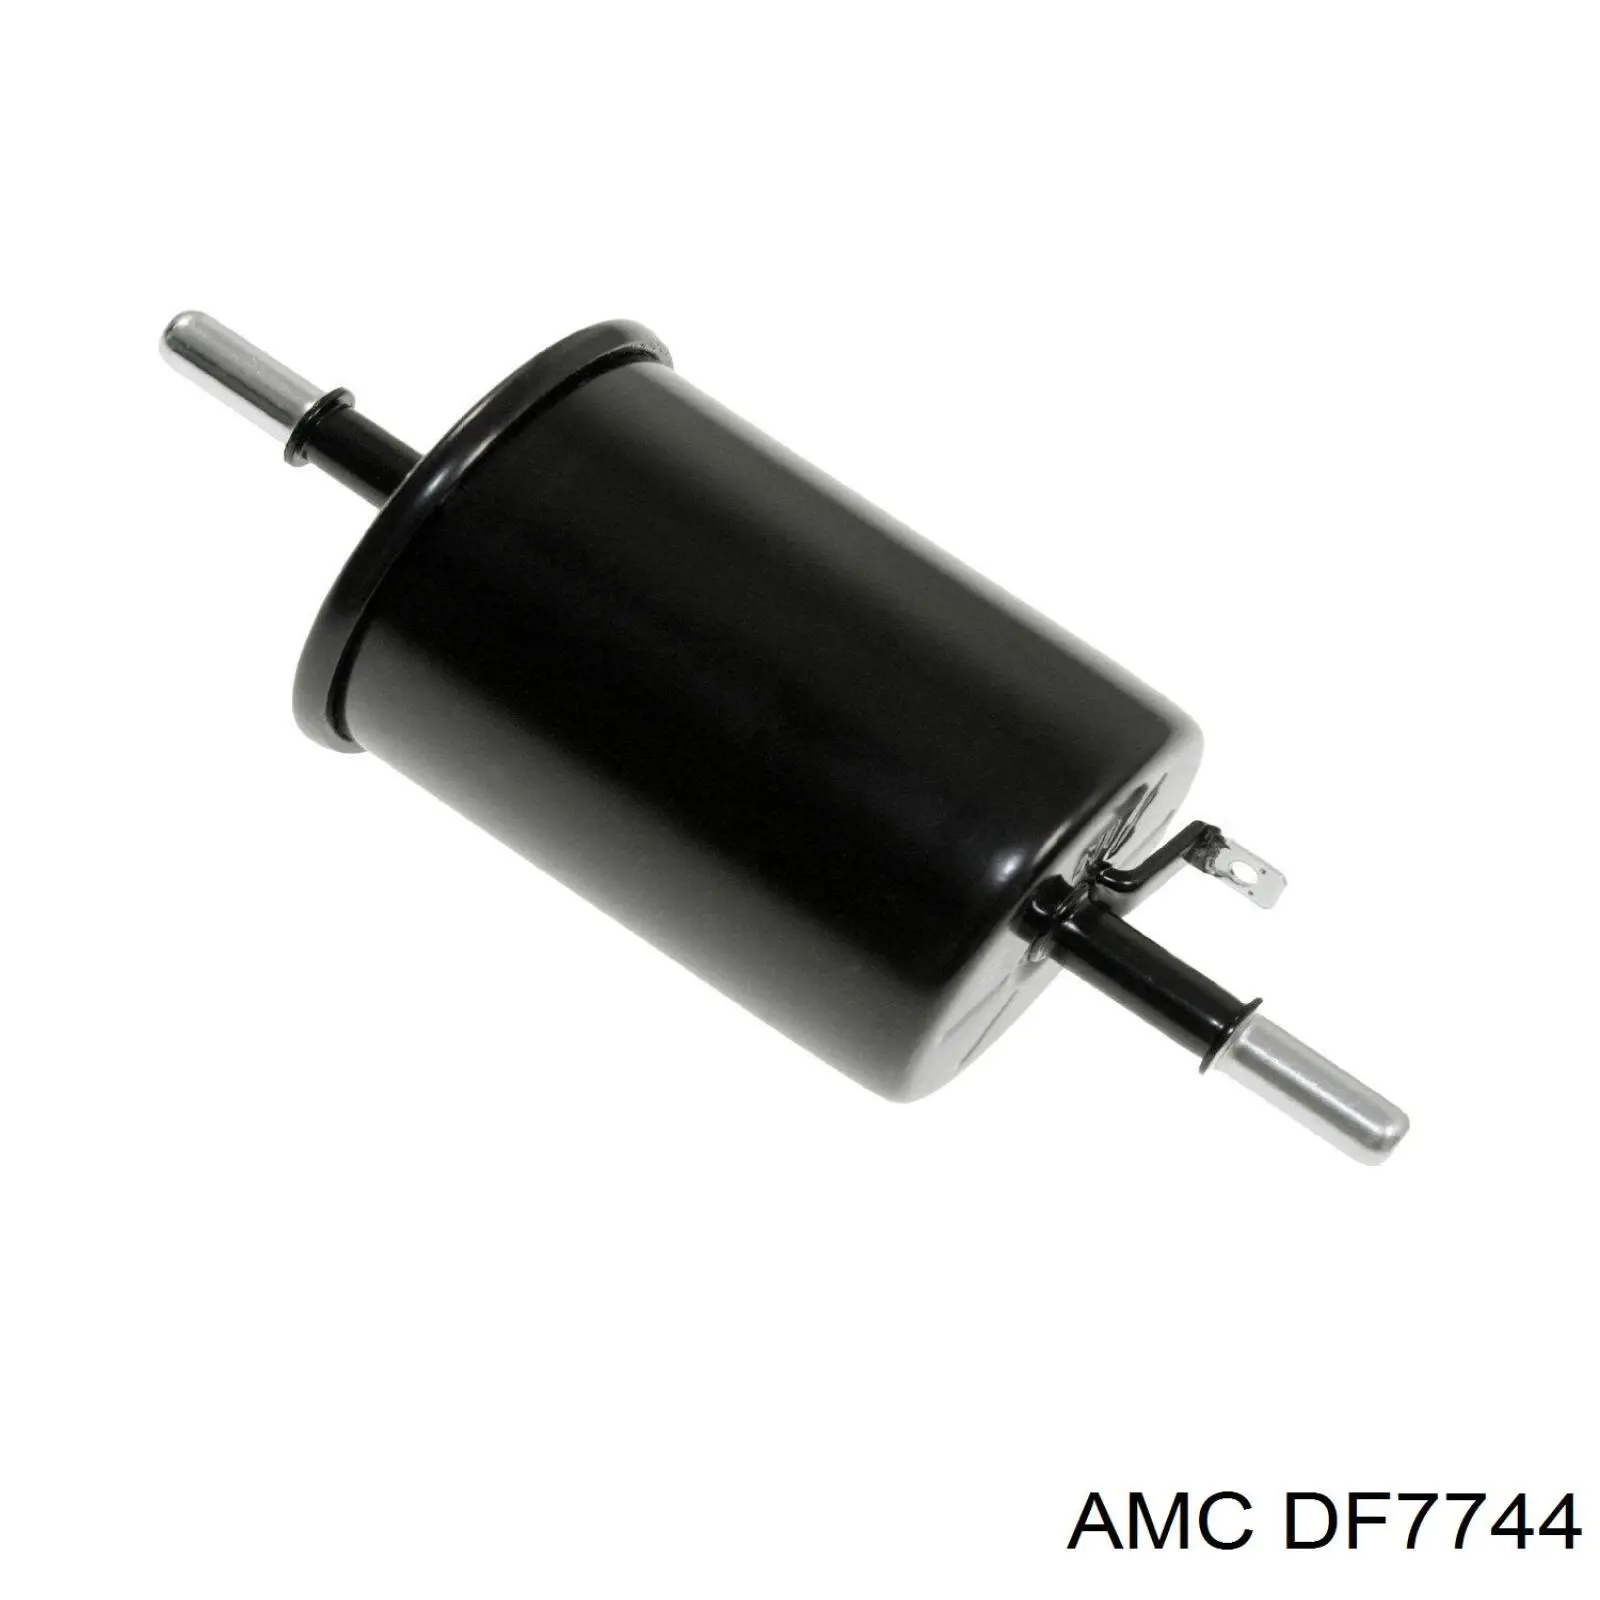 DF-7744 AMC filtro de combustible